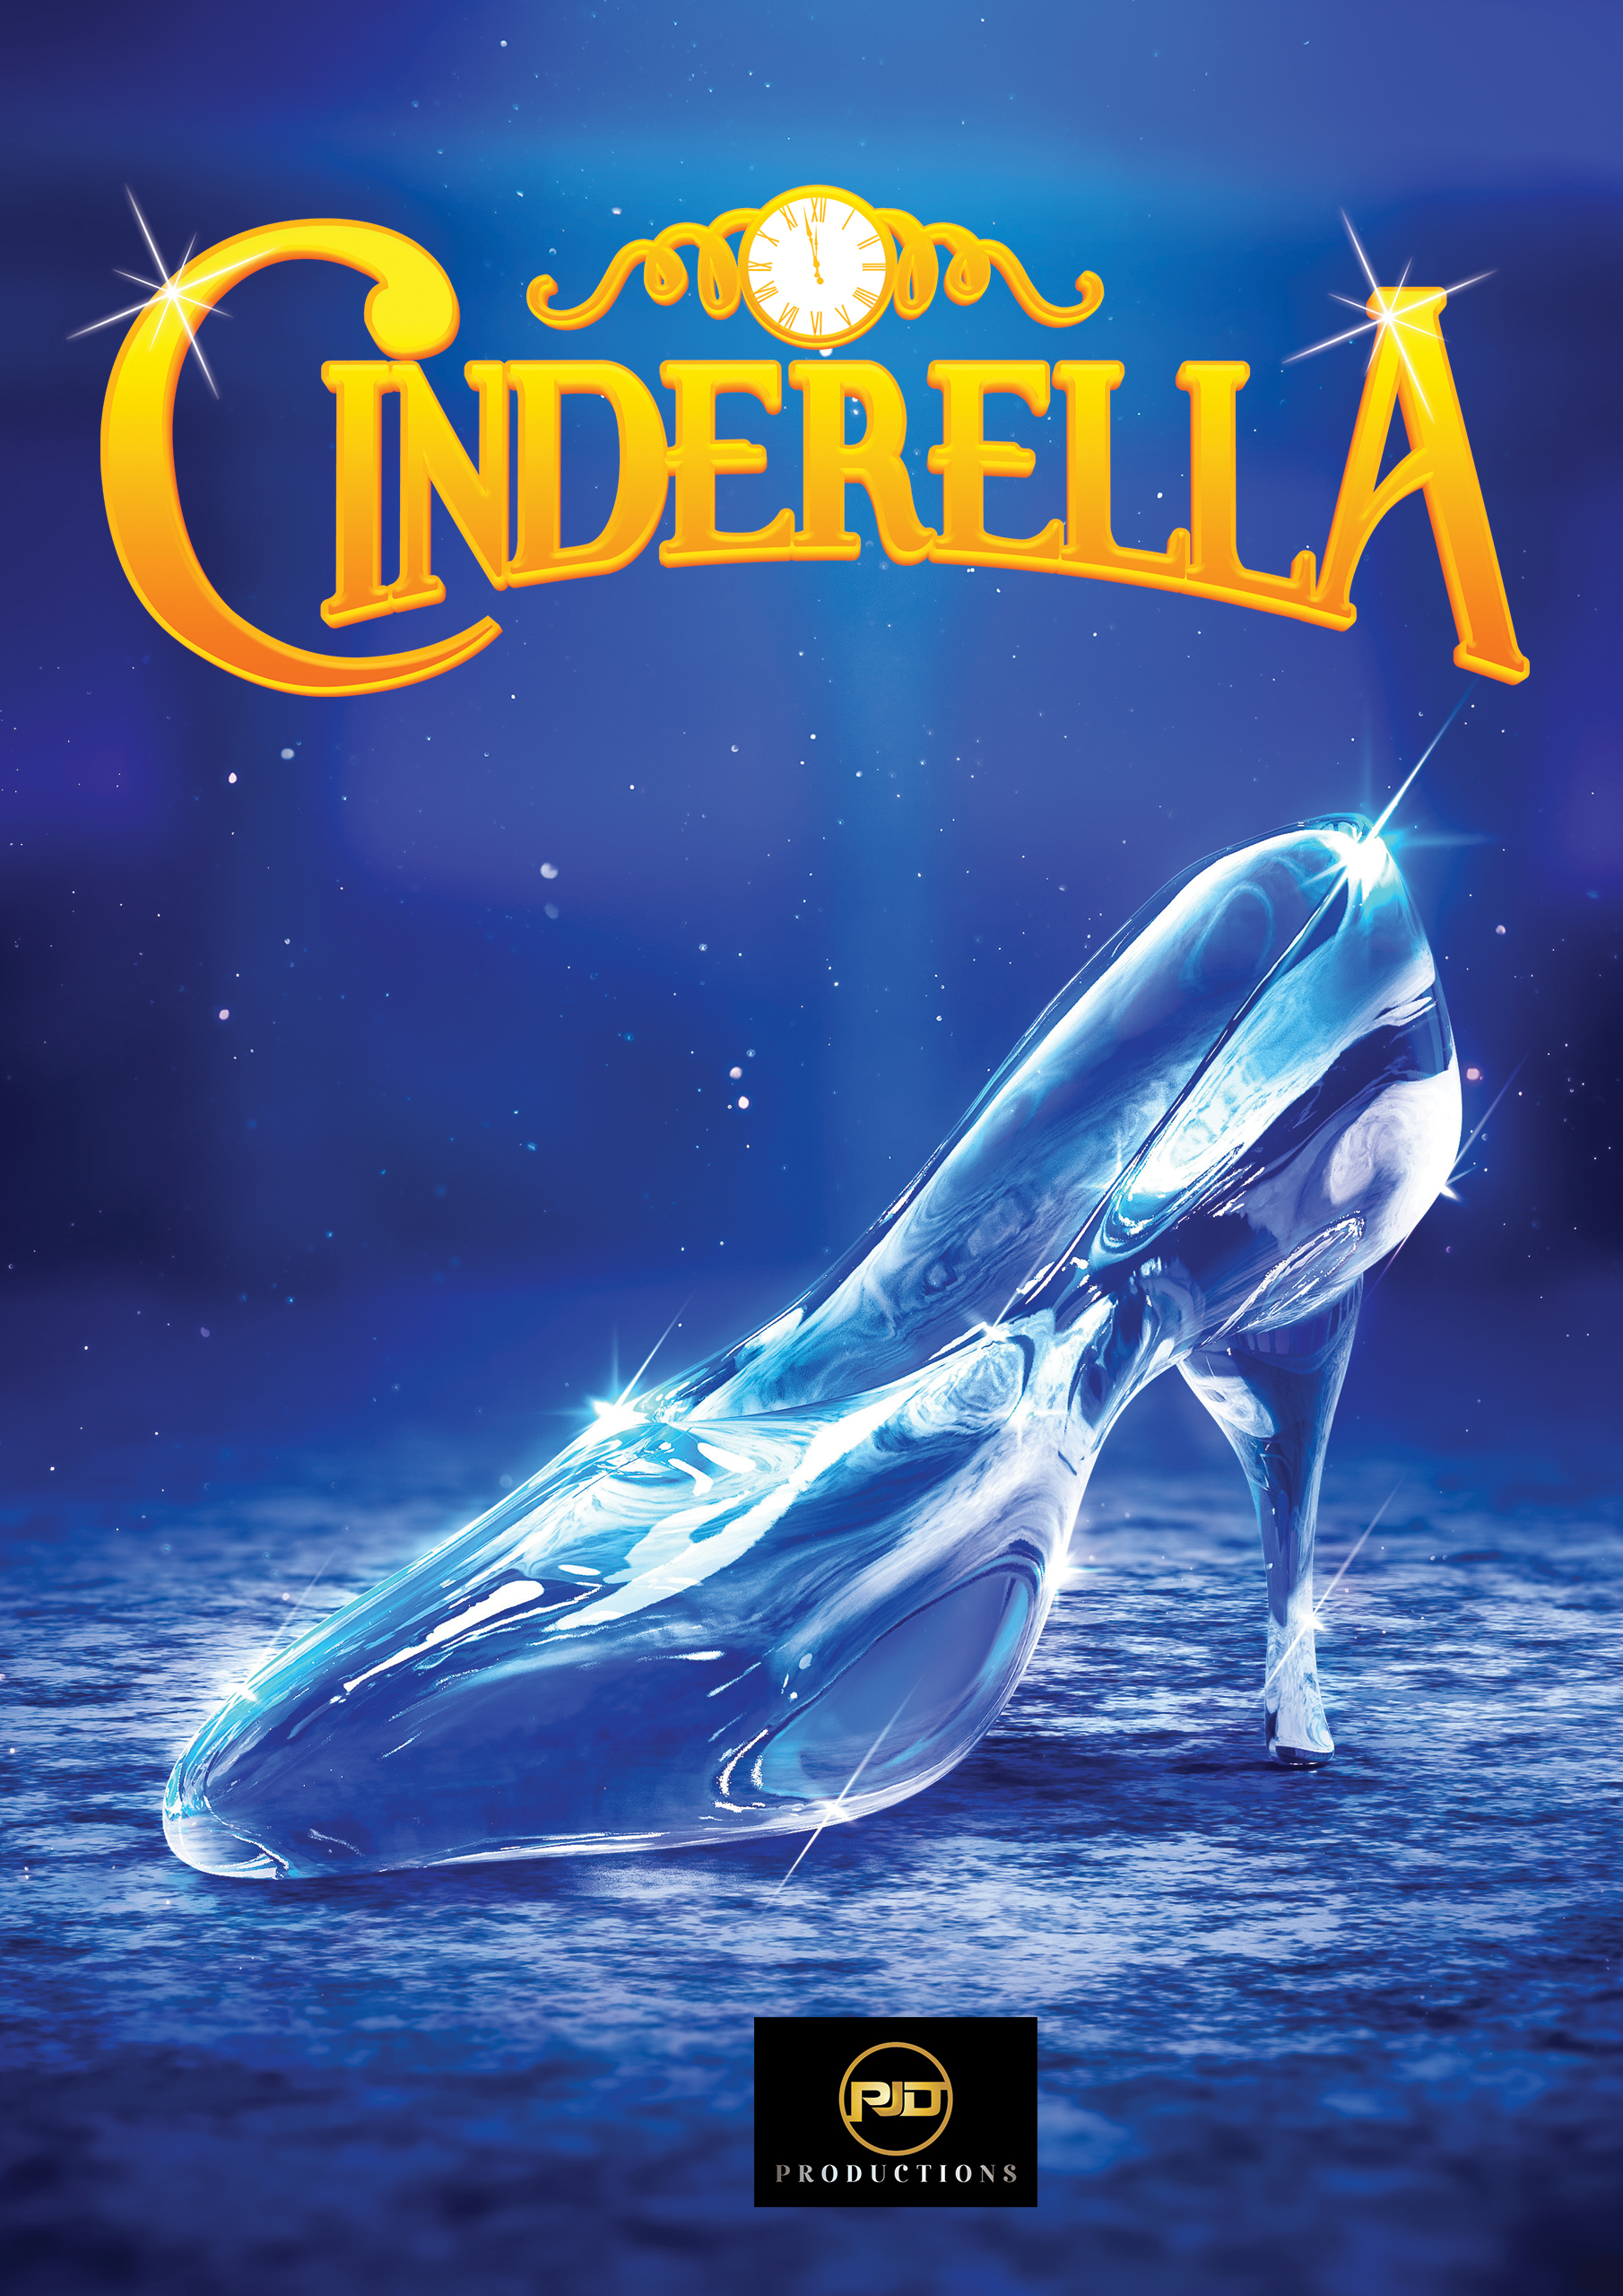 Cinderella panto image